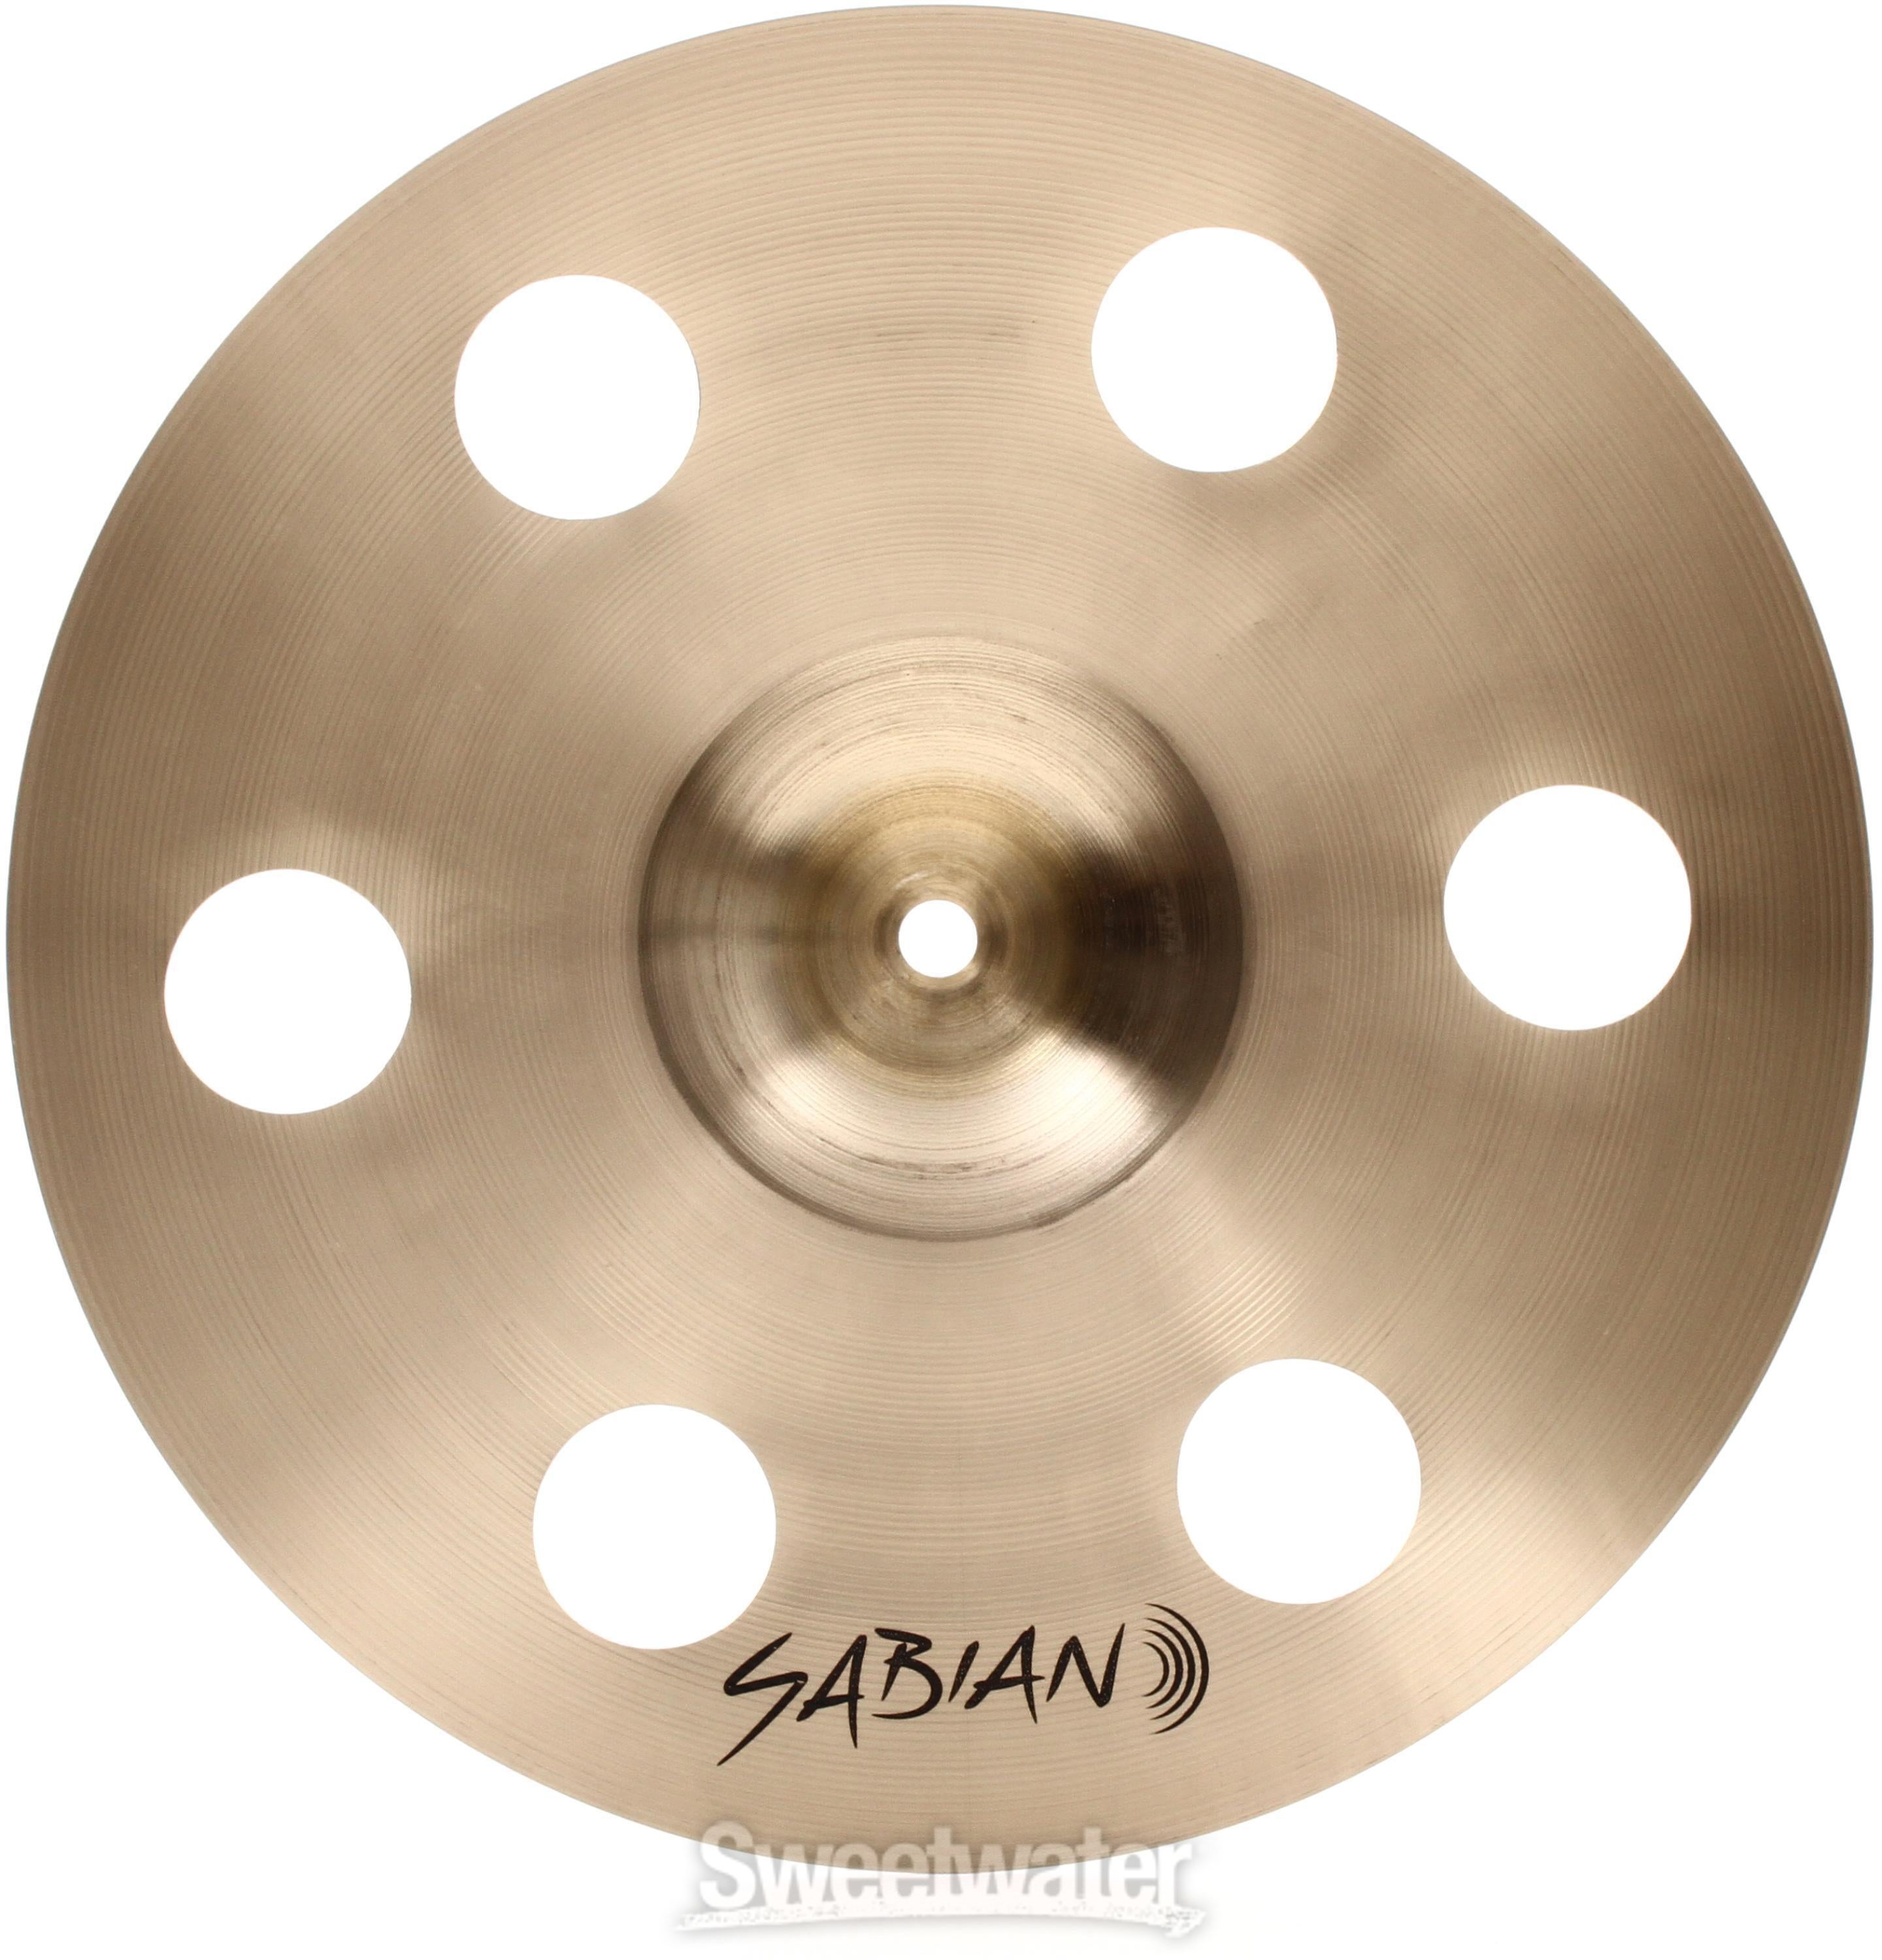 超安いSABIAN AAX O-Zone Splash 12インチ セイビアン ドラム